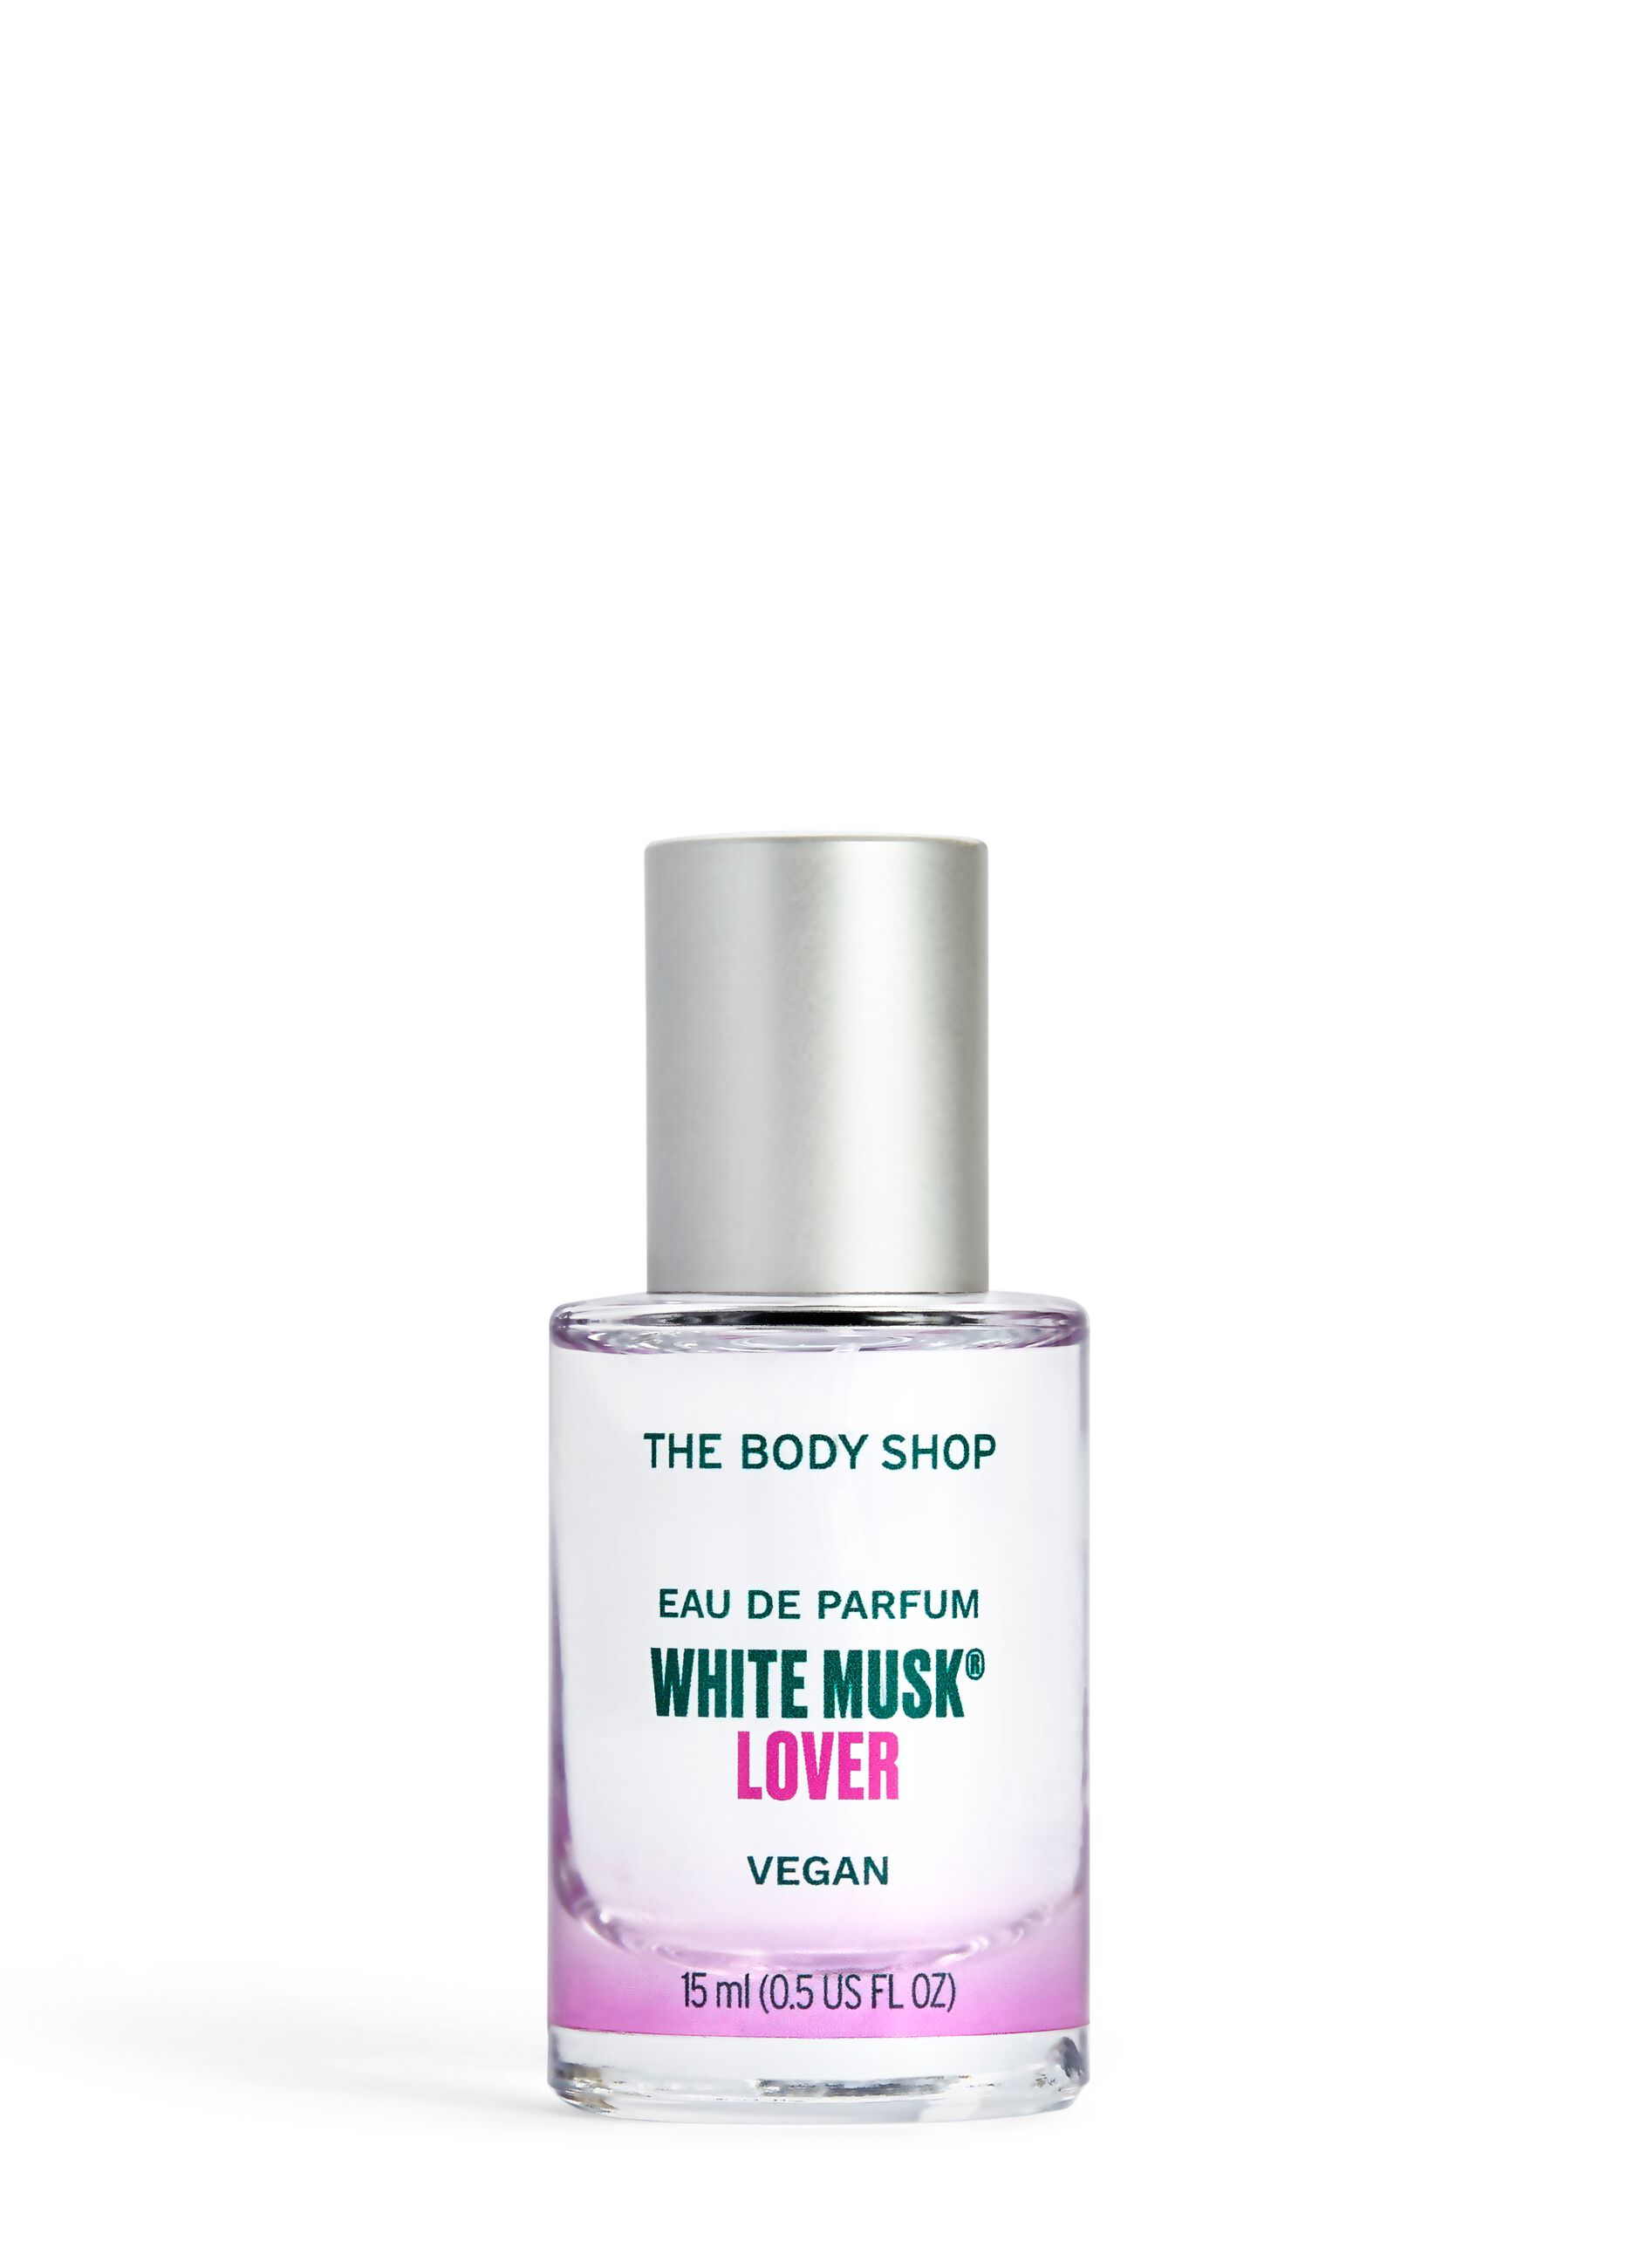 The Body Shop White Musk® Lover Eau de Parfum 15ml